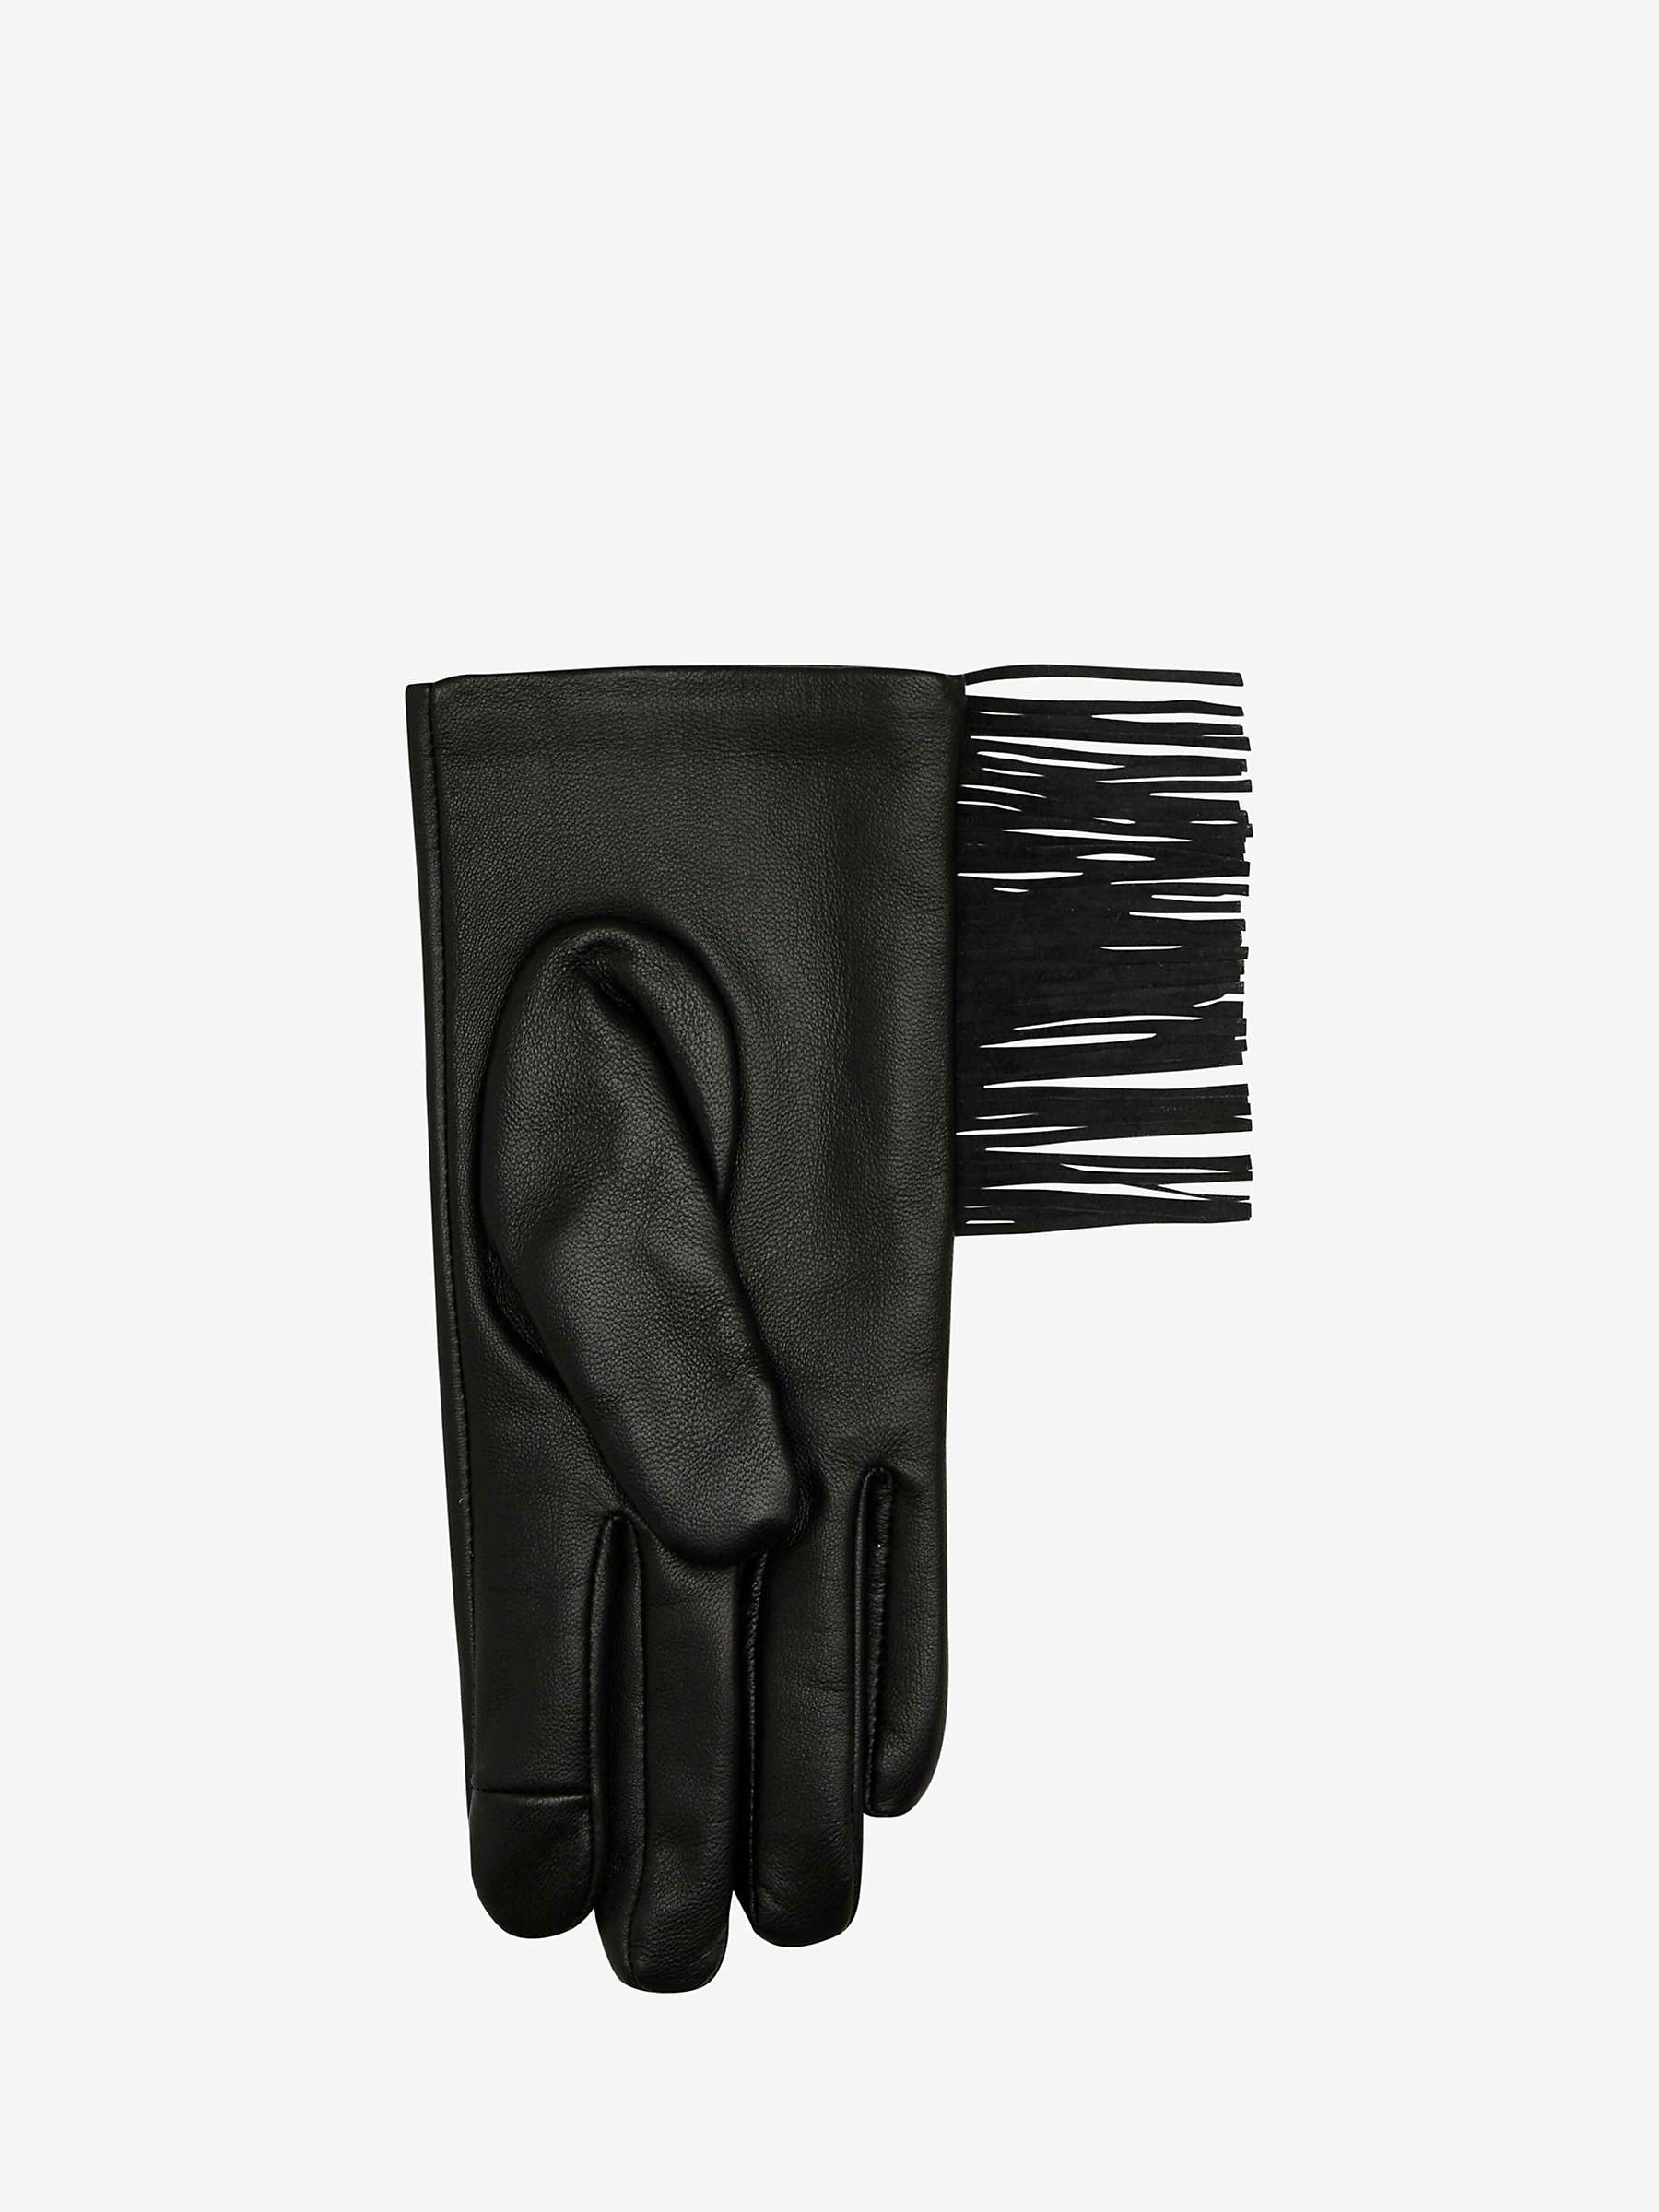 Buy Unmade Copenhagen Frigga Fringe Leather Gloves, Black Online at johnlewis.com